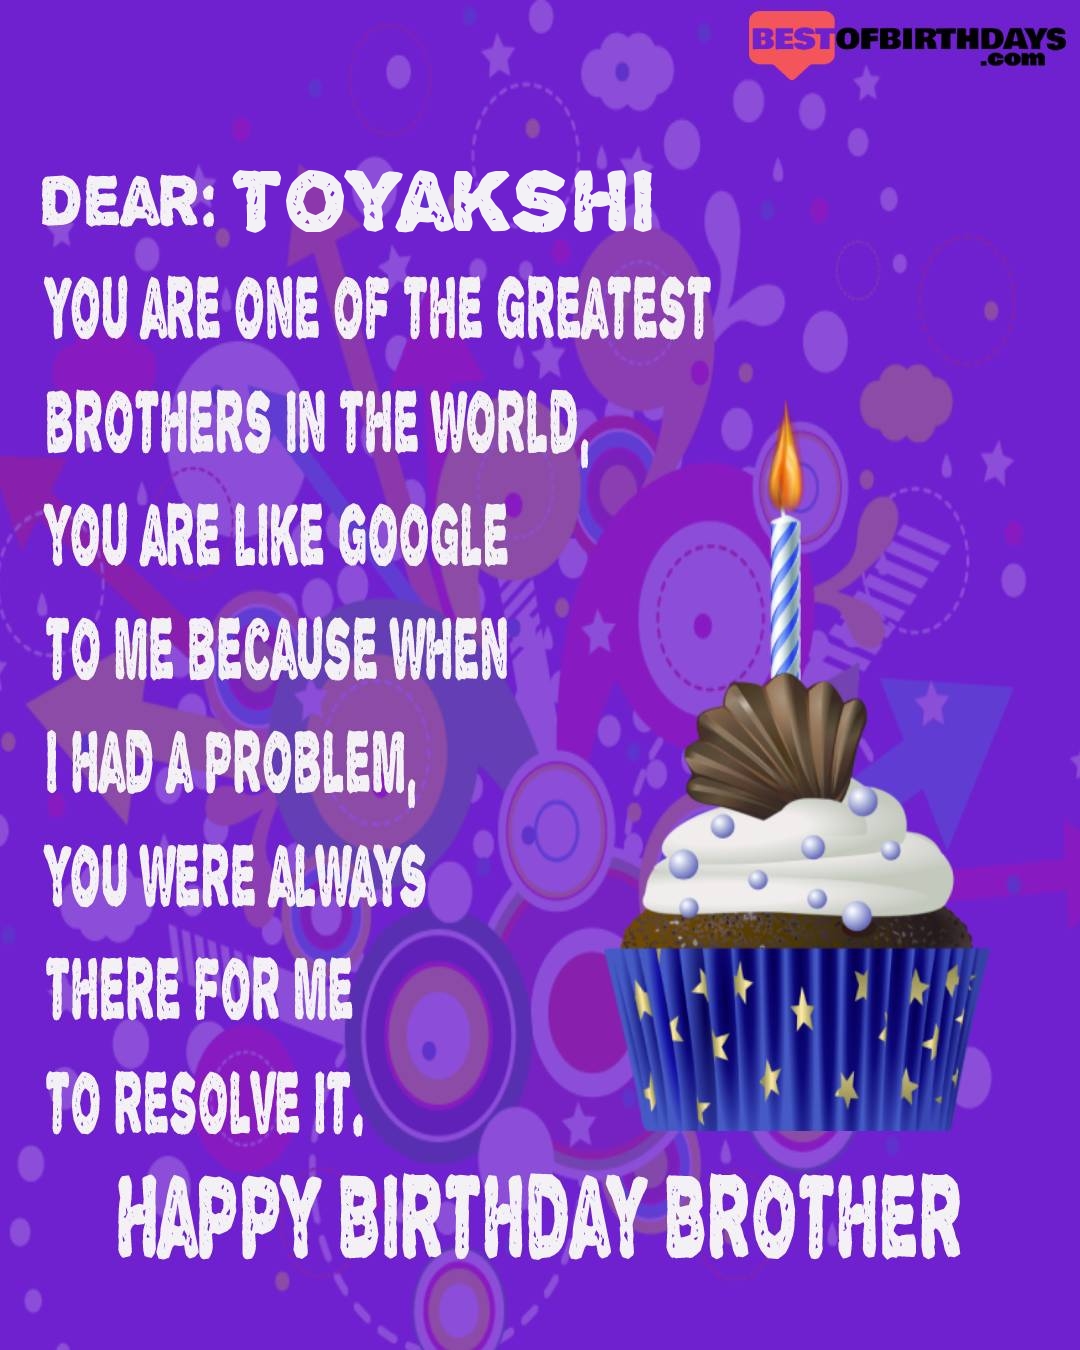 Happy birthday toyakshi bhai brother bro